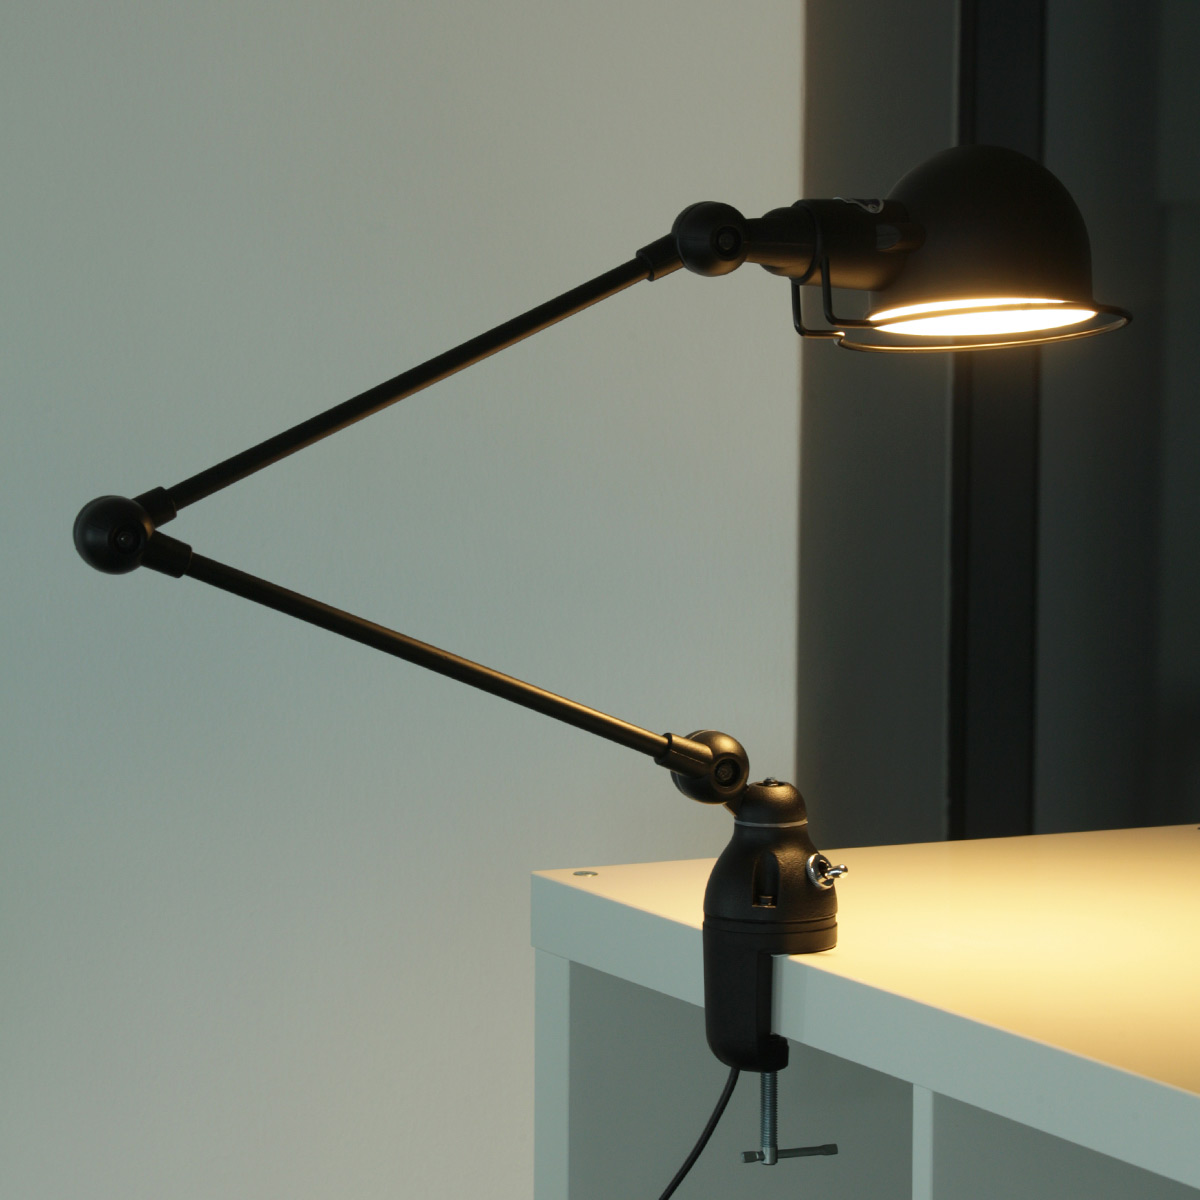 Klemm-Lampe SIGNAL für Tischplatten und Regale: Jieldé Klemmleuchte SI332, Modell 2, Graphitschwarz (RAL 9011) matt